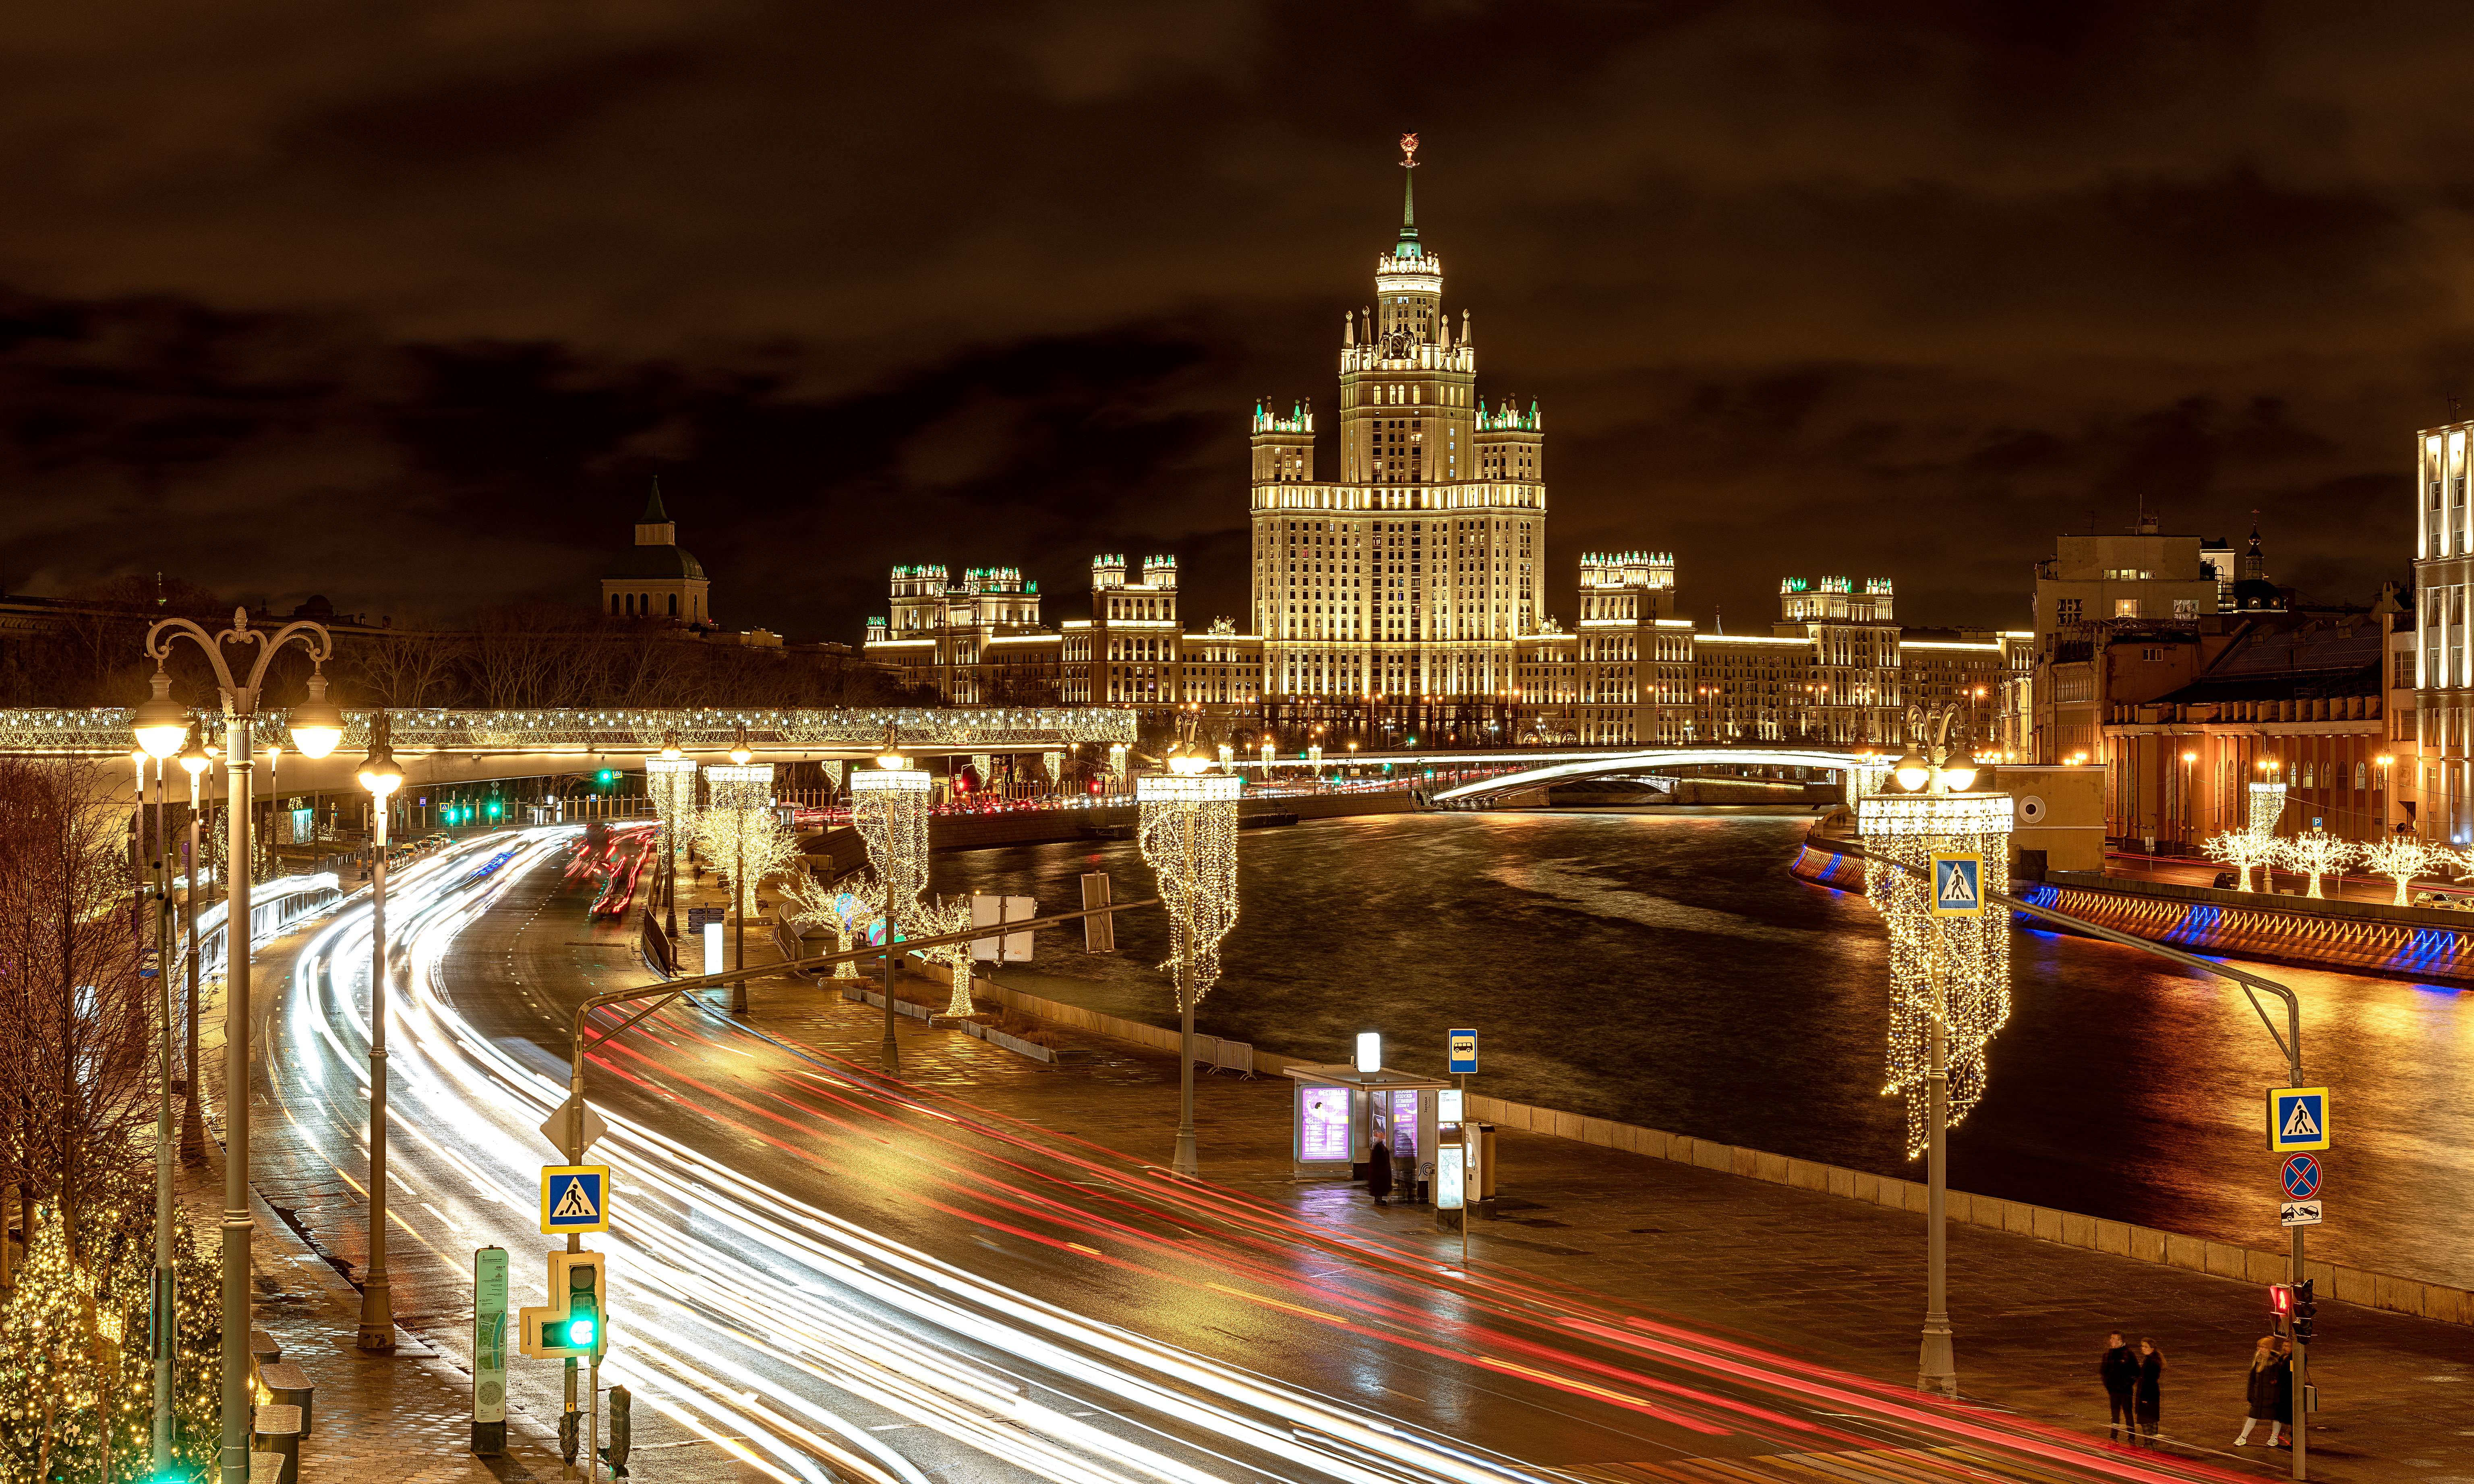 免费照片从莫斯科大剧院大桥看莫斯科大堤的夜景。